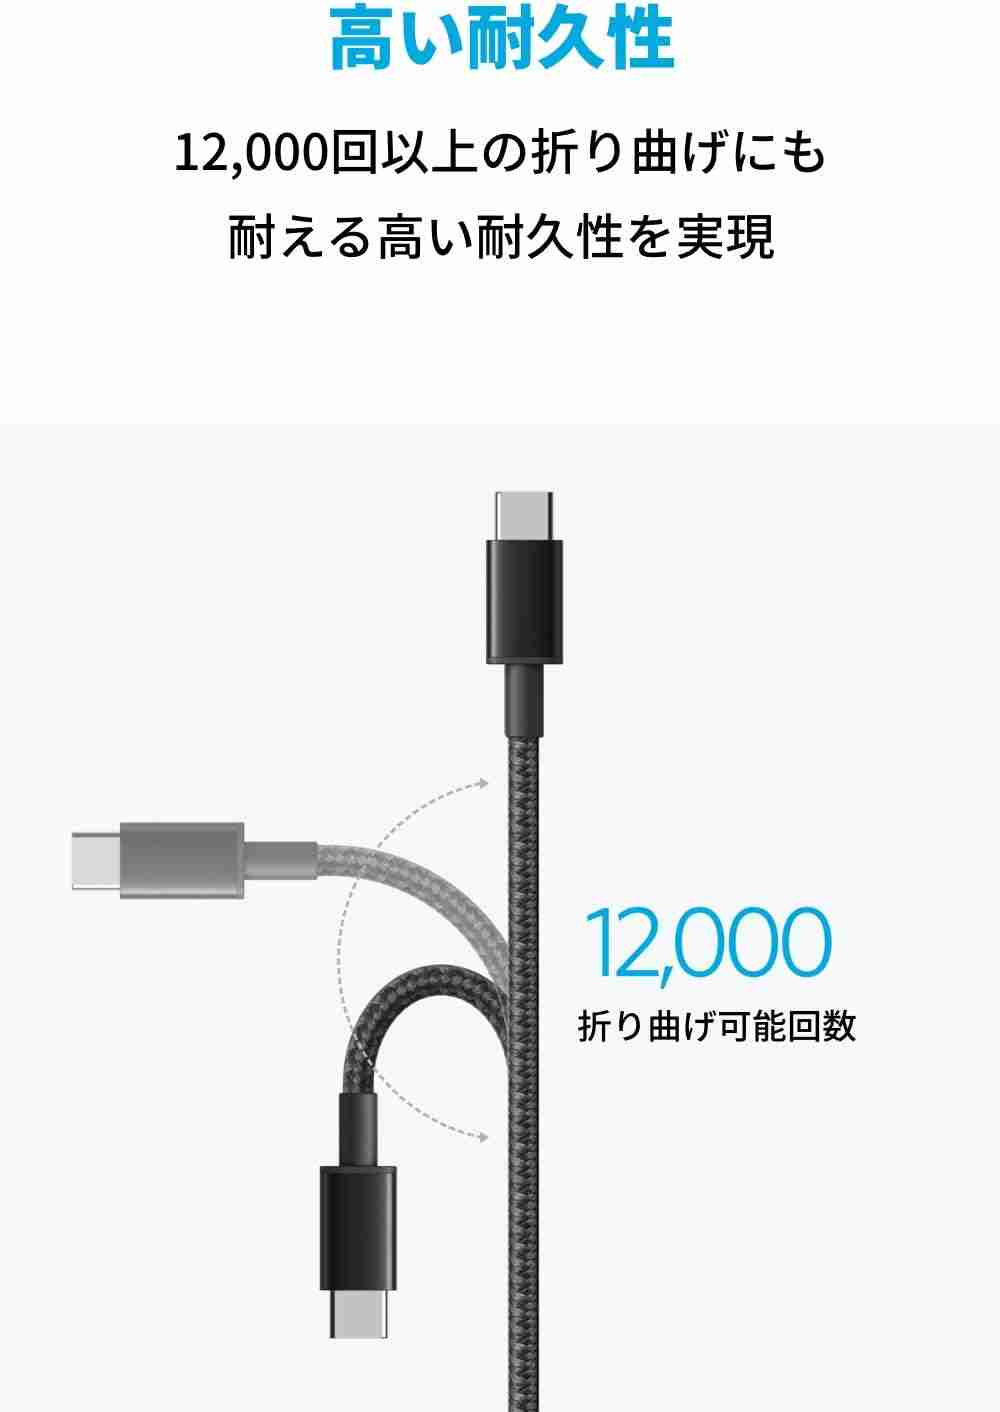 アンカー「Anker NewNylon USB-C to USB-C Cable 2.0 60W」は高耐久が魅力